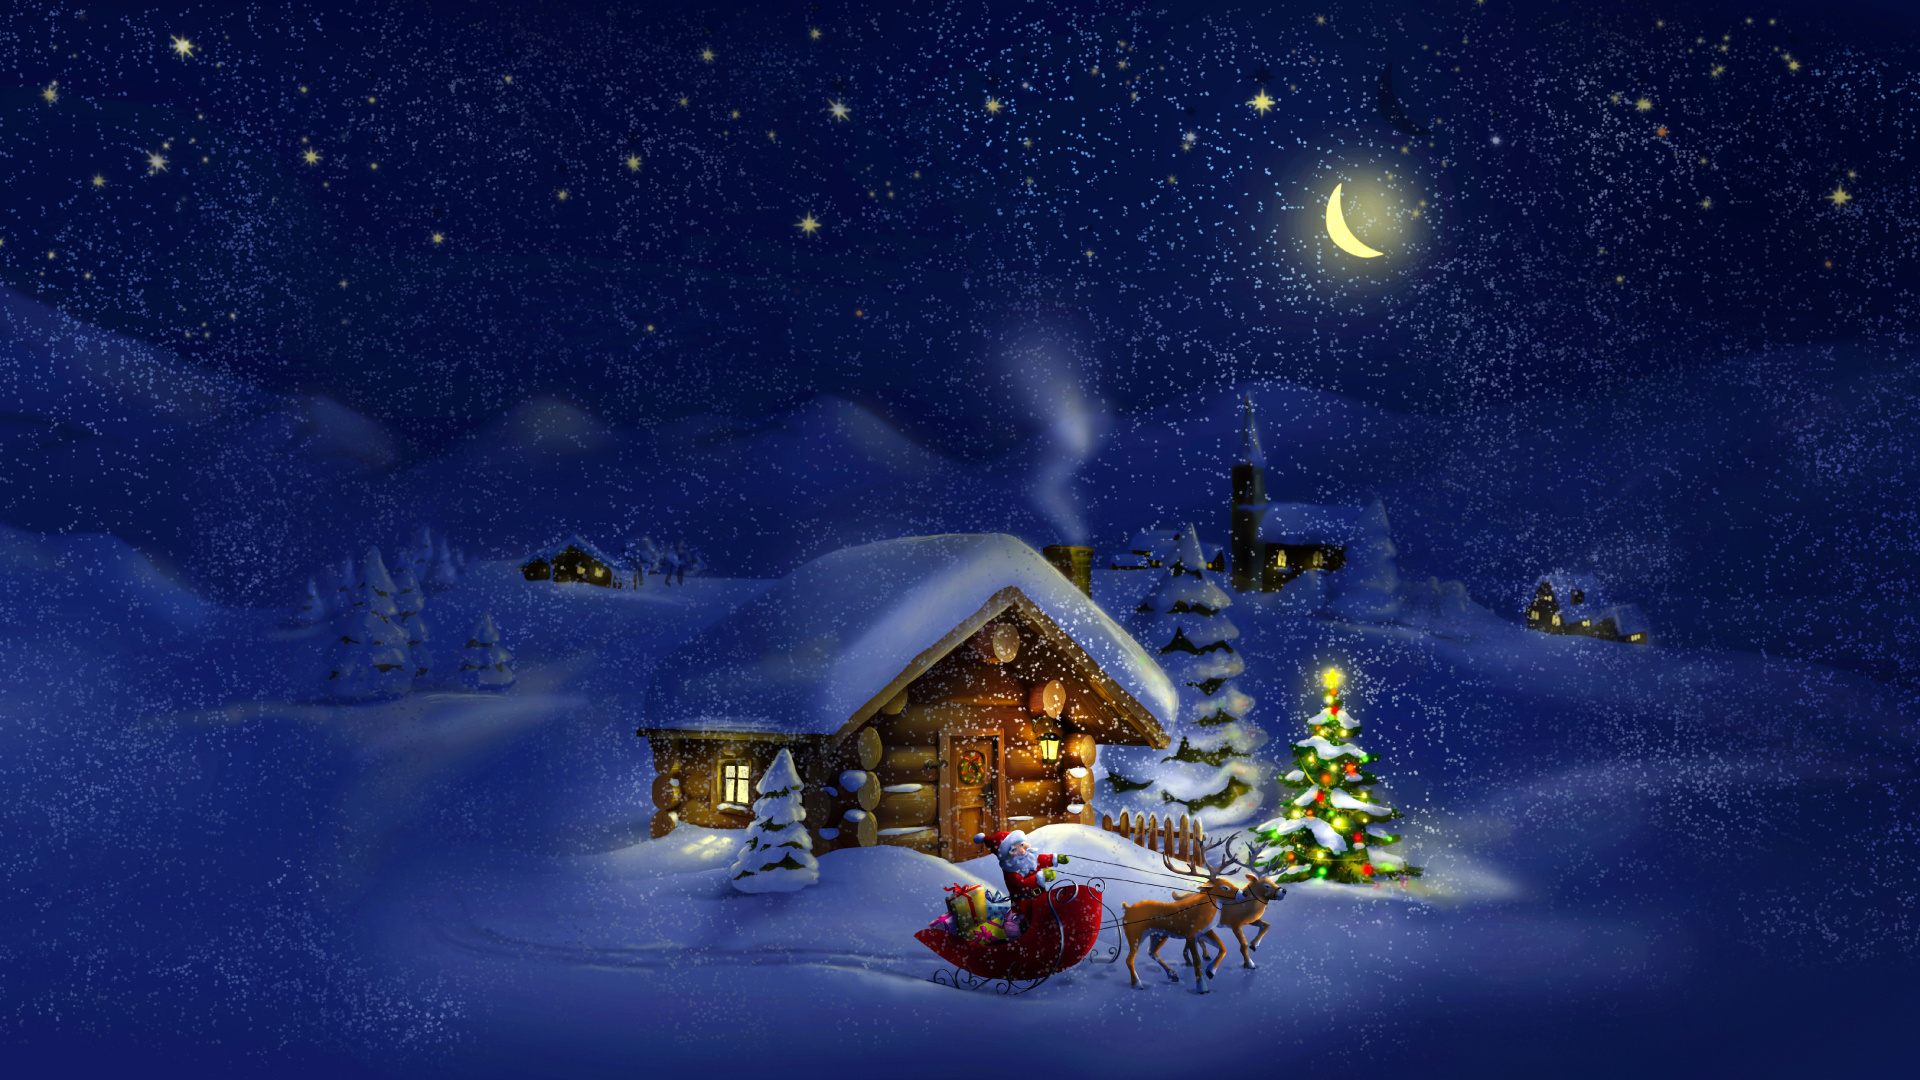 El Día De Navidad, Santa Claus, Invierno, Nieve, Navidad. Wallpaper in 1920x1080 Resolution